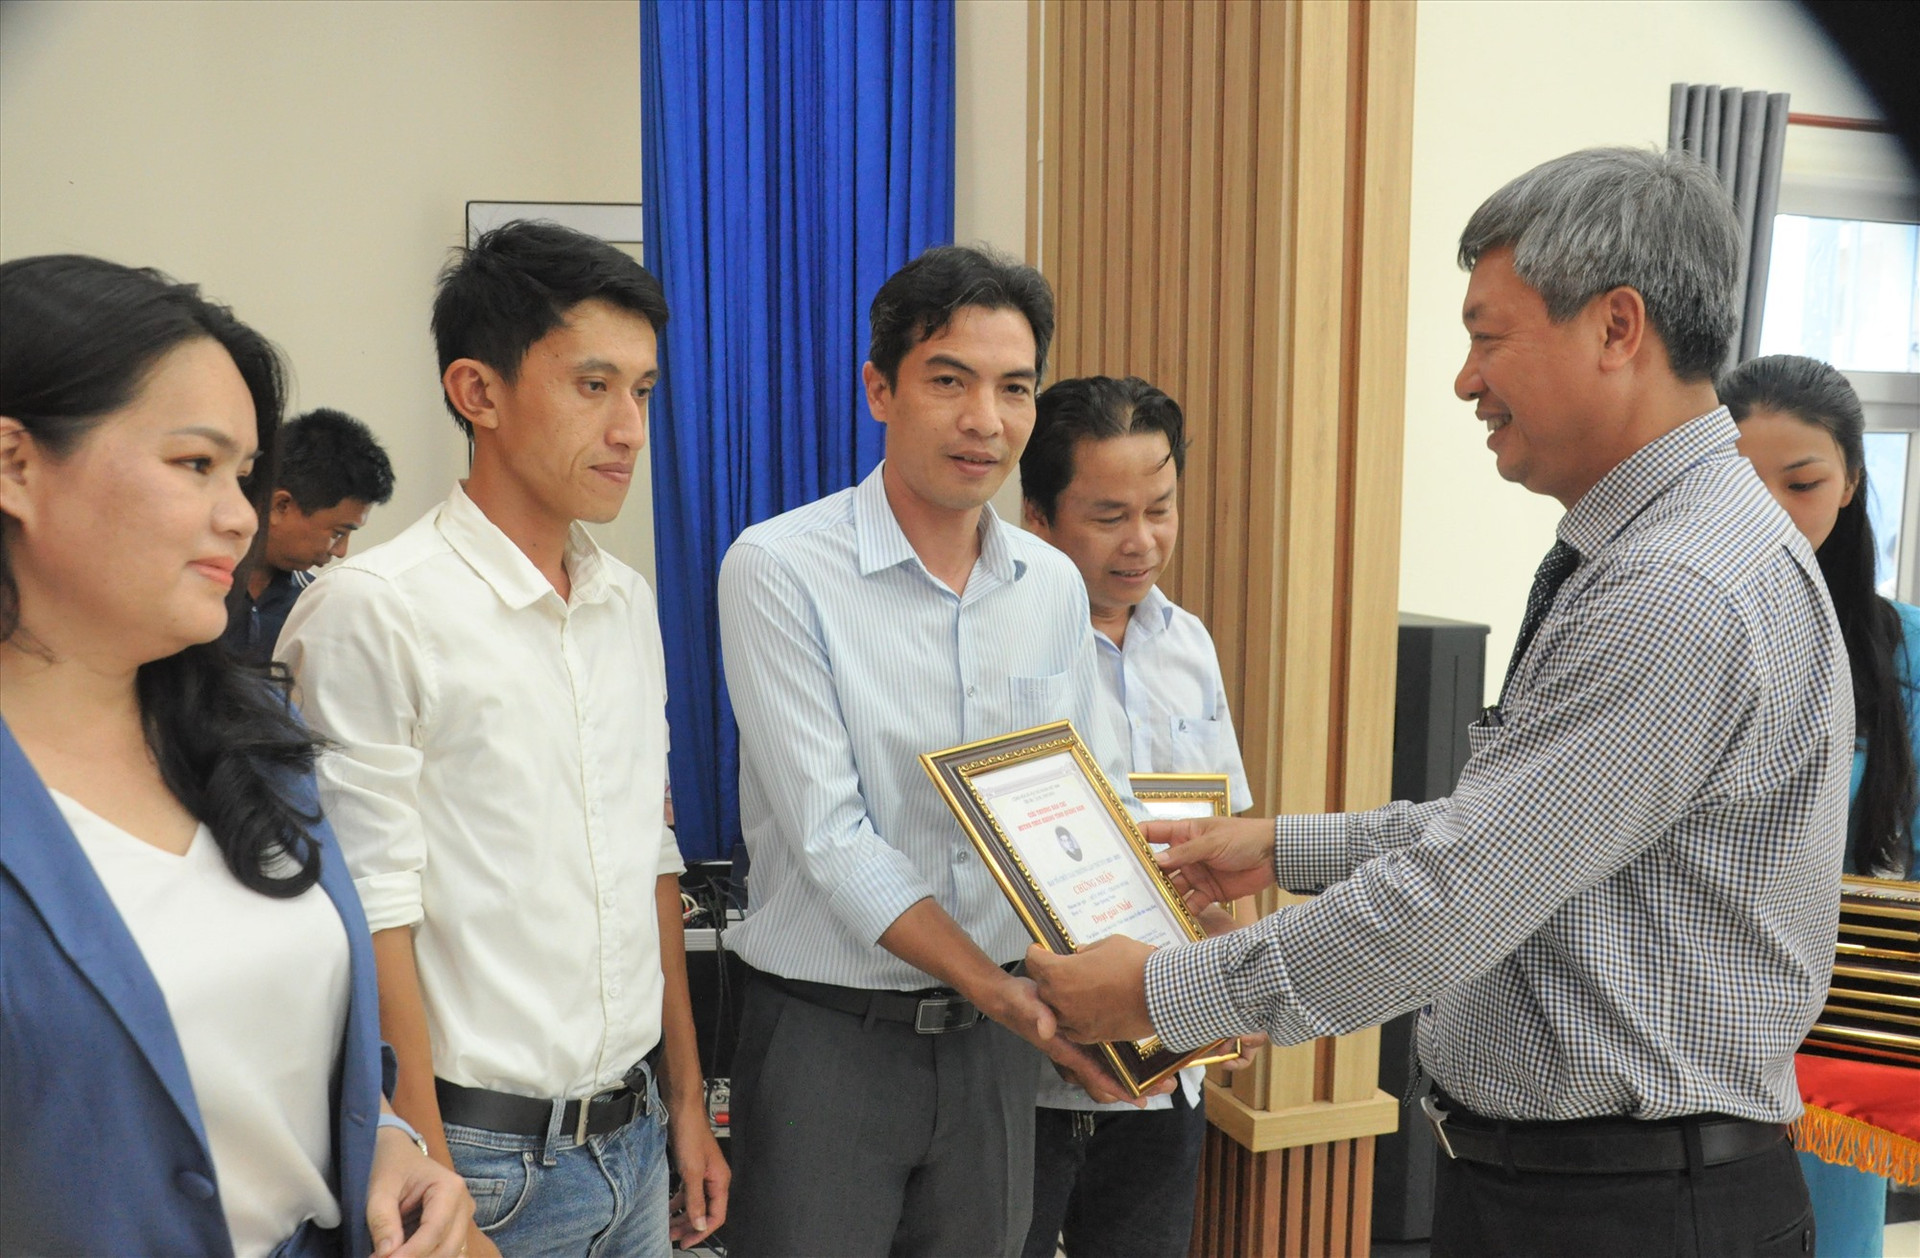 Phó Chủ tịch UBND tỉnh Hồ Quang Bửu trao thưởng cho các tác giải đoạt giải nhất. Ảnh: A.N